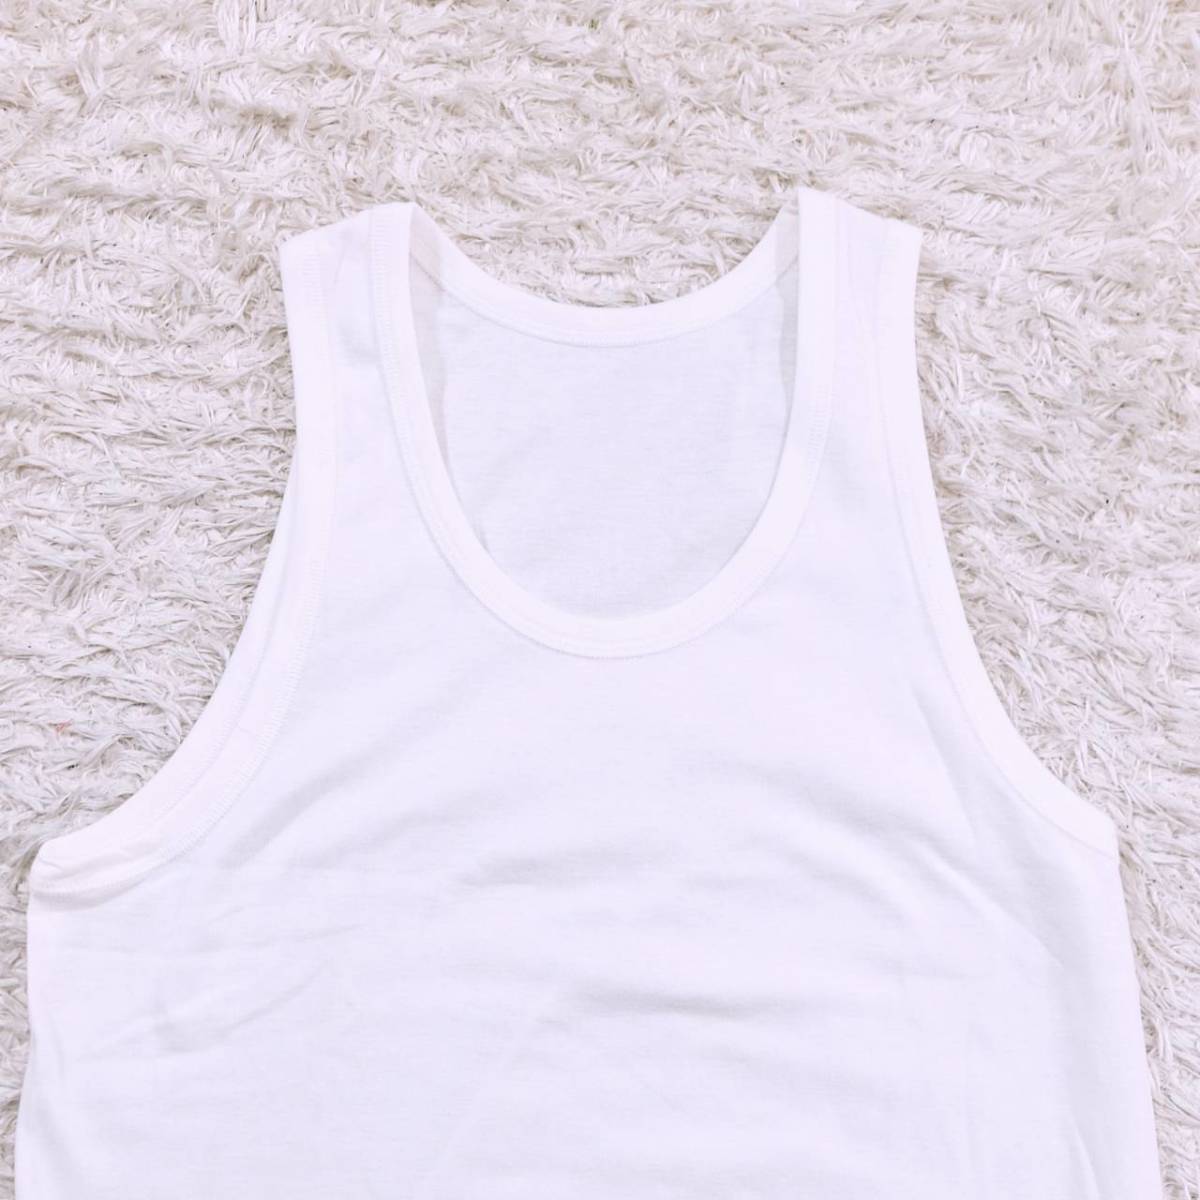 メンズ88-96 インナー インナーシャツ ノースリーブシャツ ランニングシャツ 白 ホワイト カジュアル シンプル 春夏 下着 【04741】